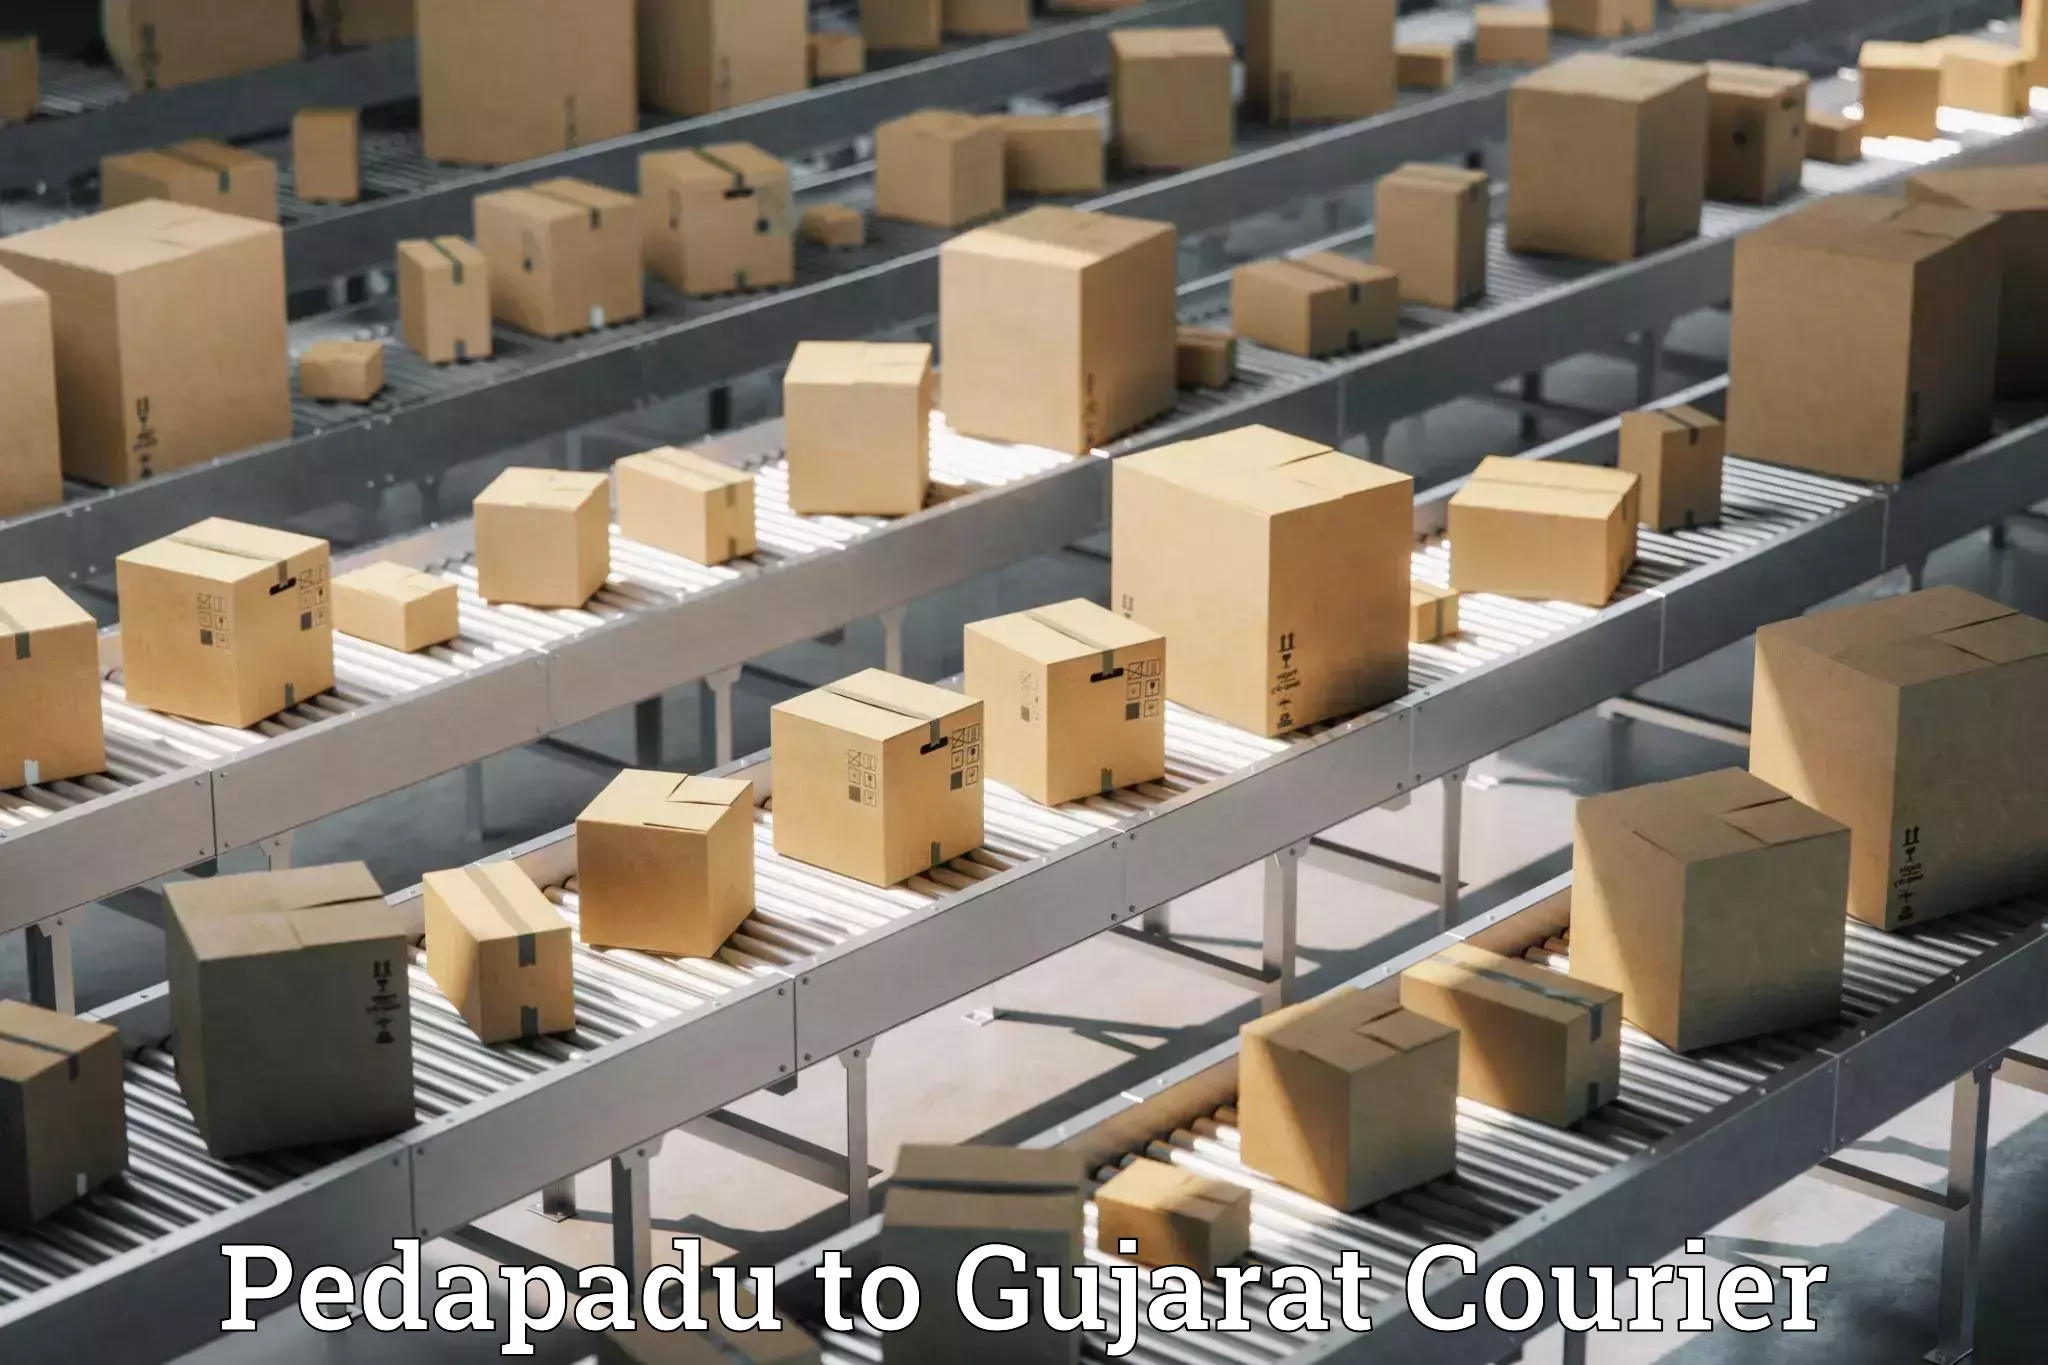 Customer-centric shipping Pedapadu to Manavadar